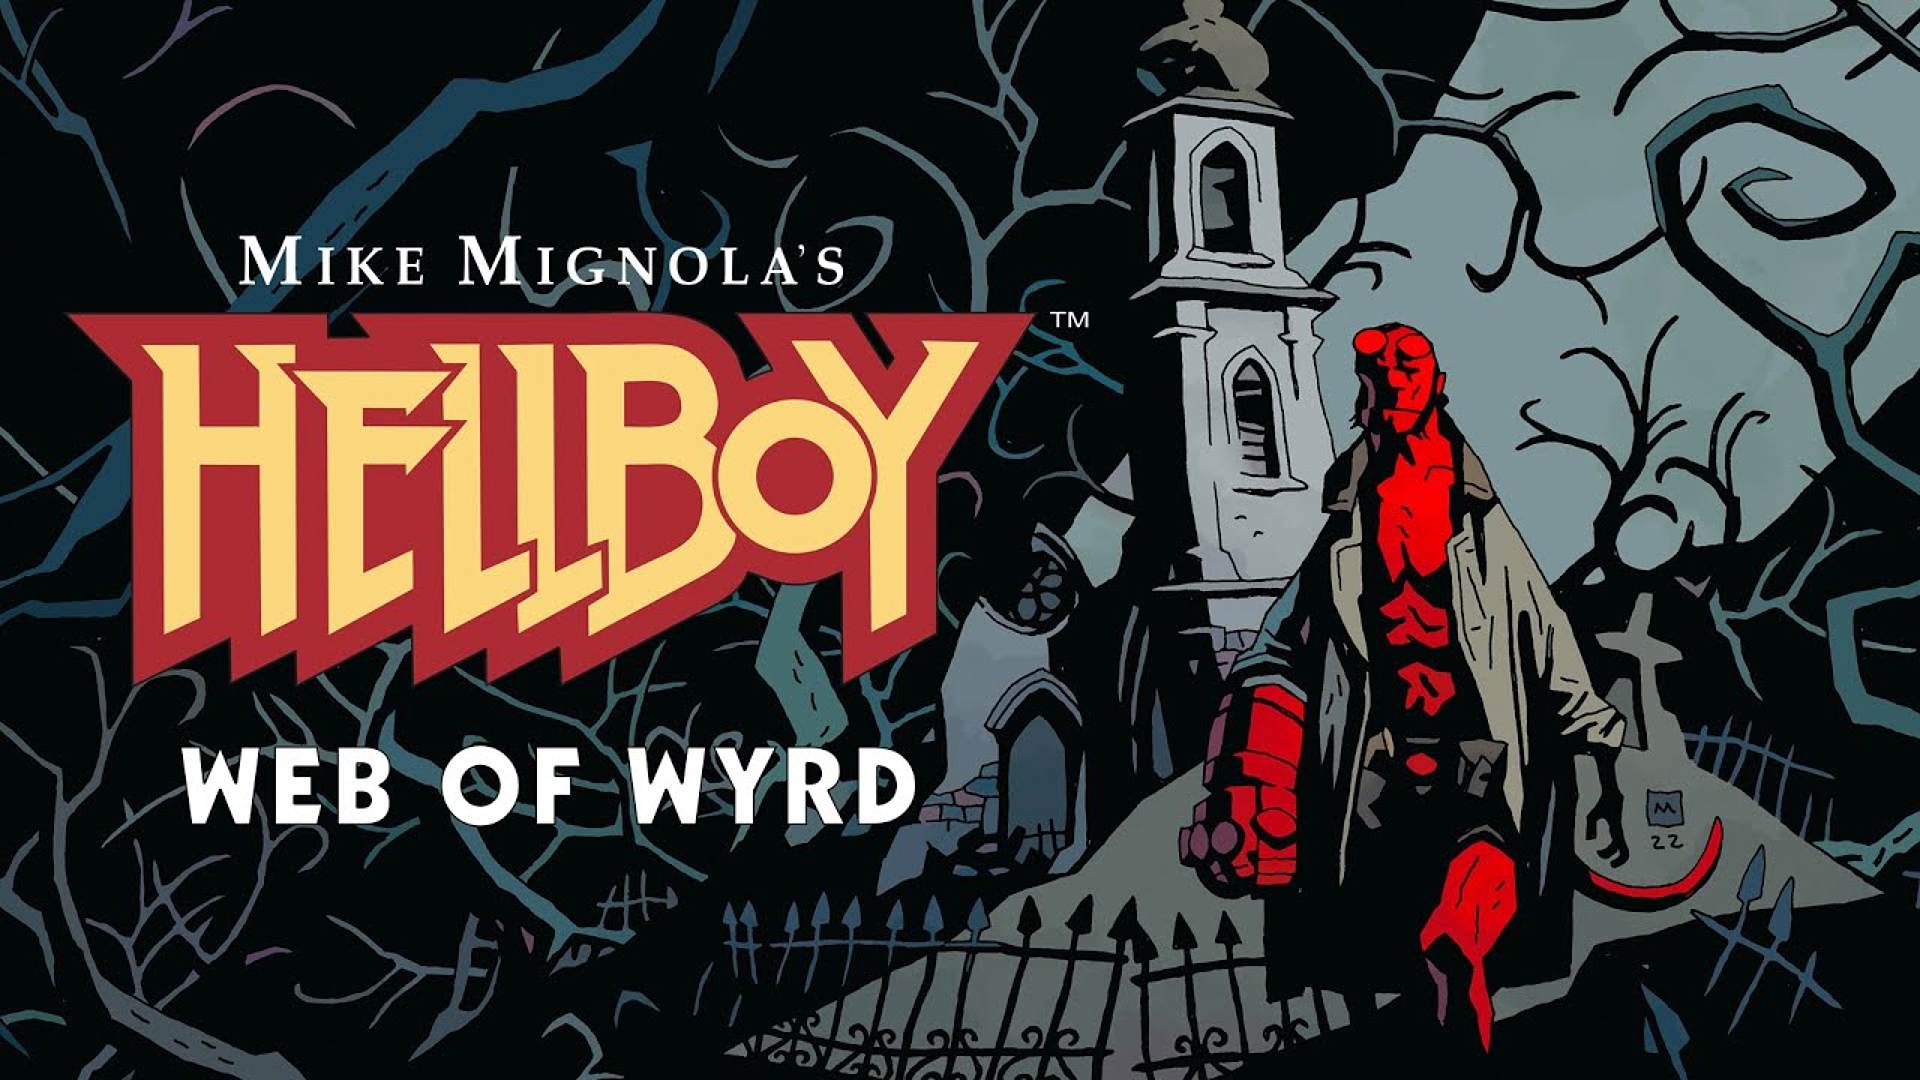 Hellboy Web of Wyrd key art and logo